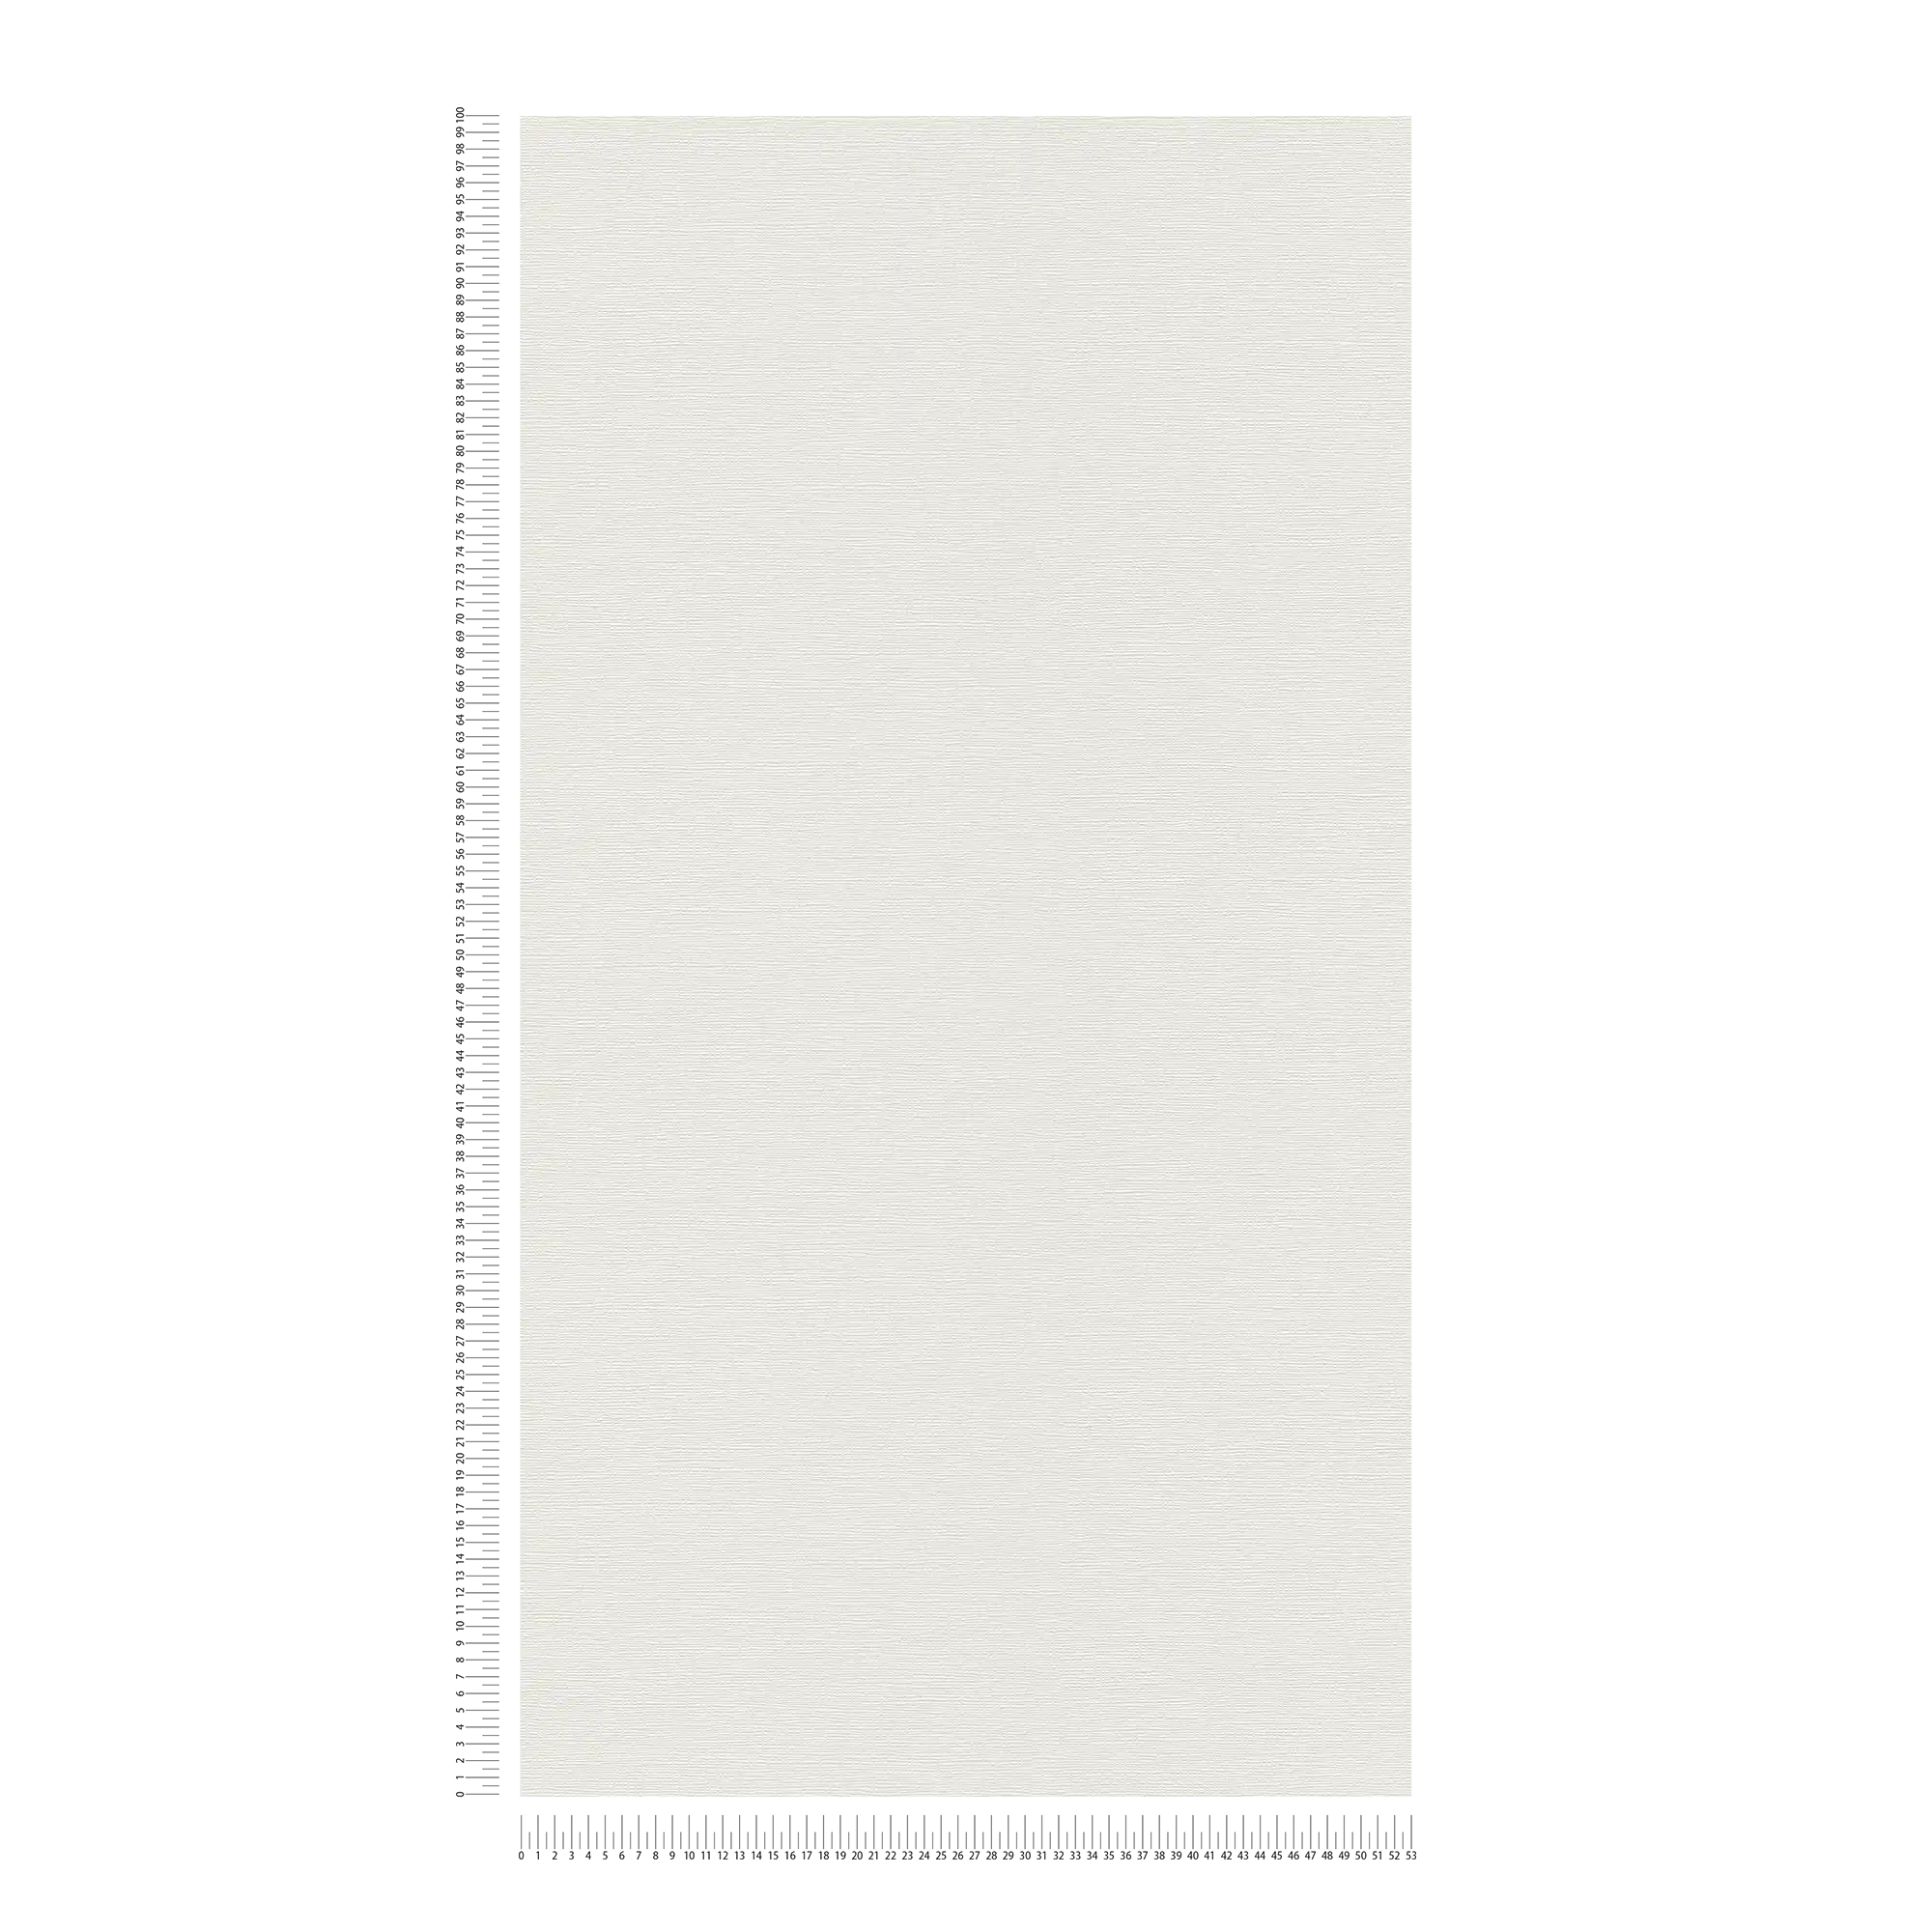             Einfarbige Tapete Weiß mit Struktur im Retro Design
        